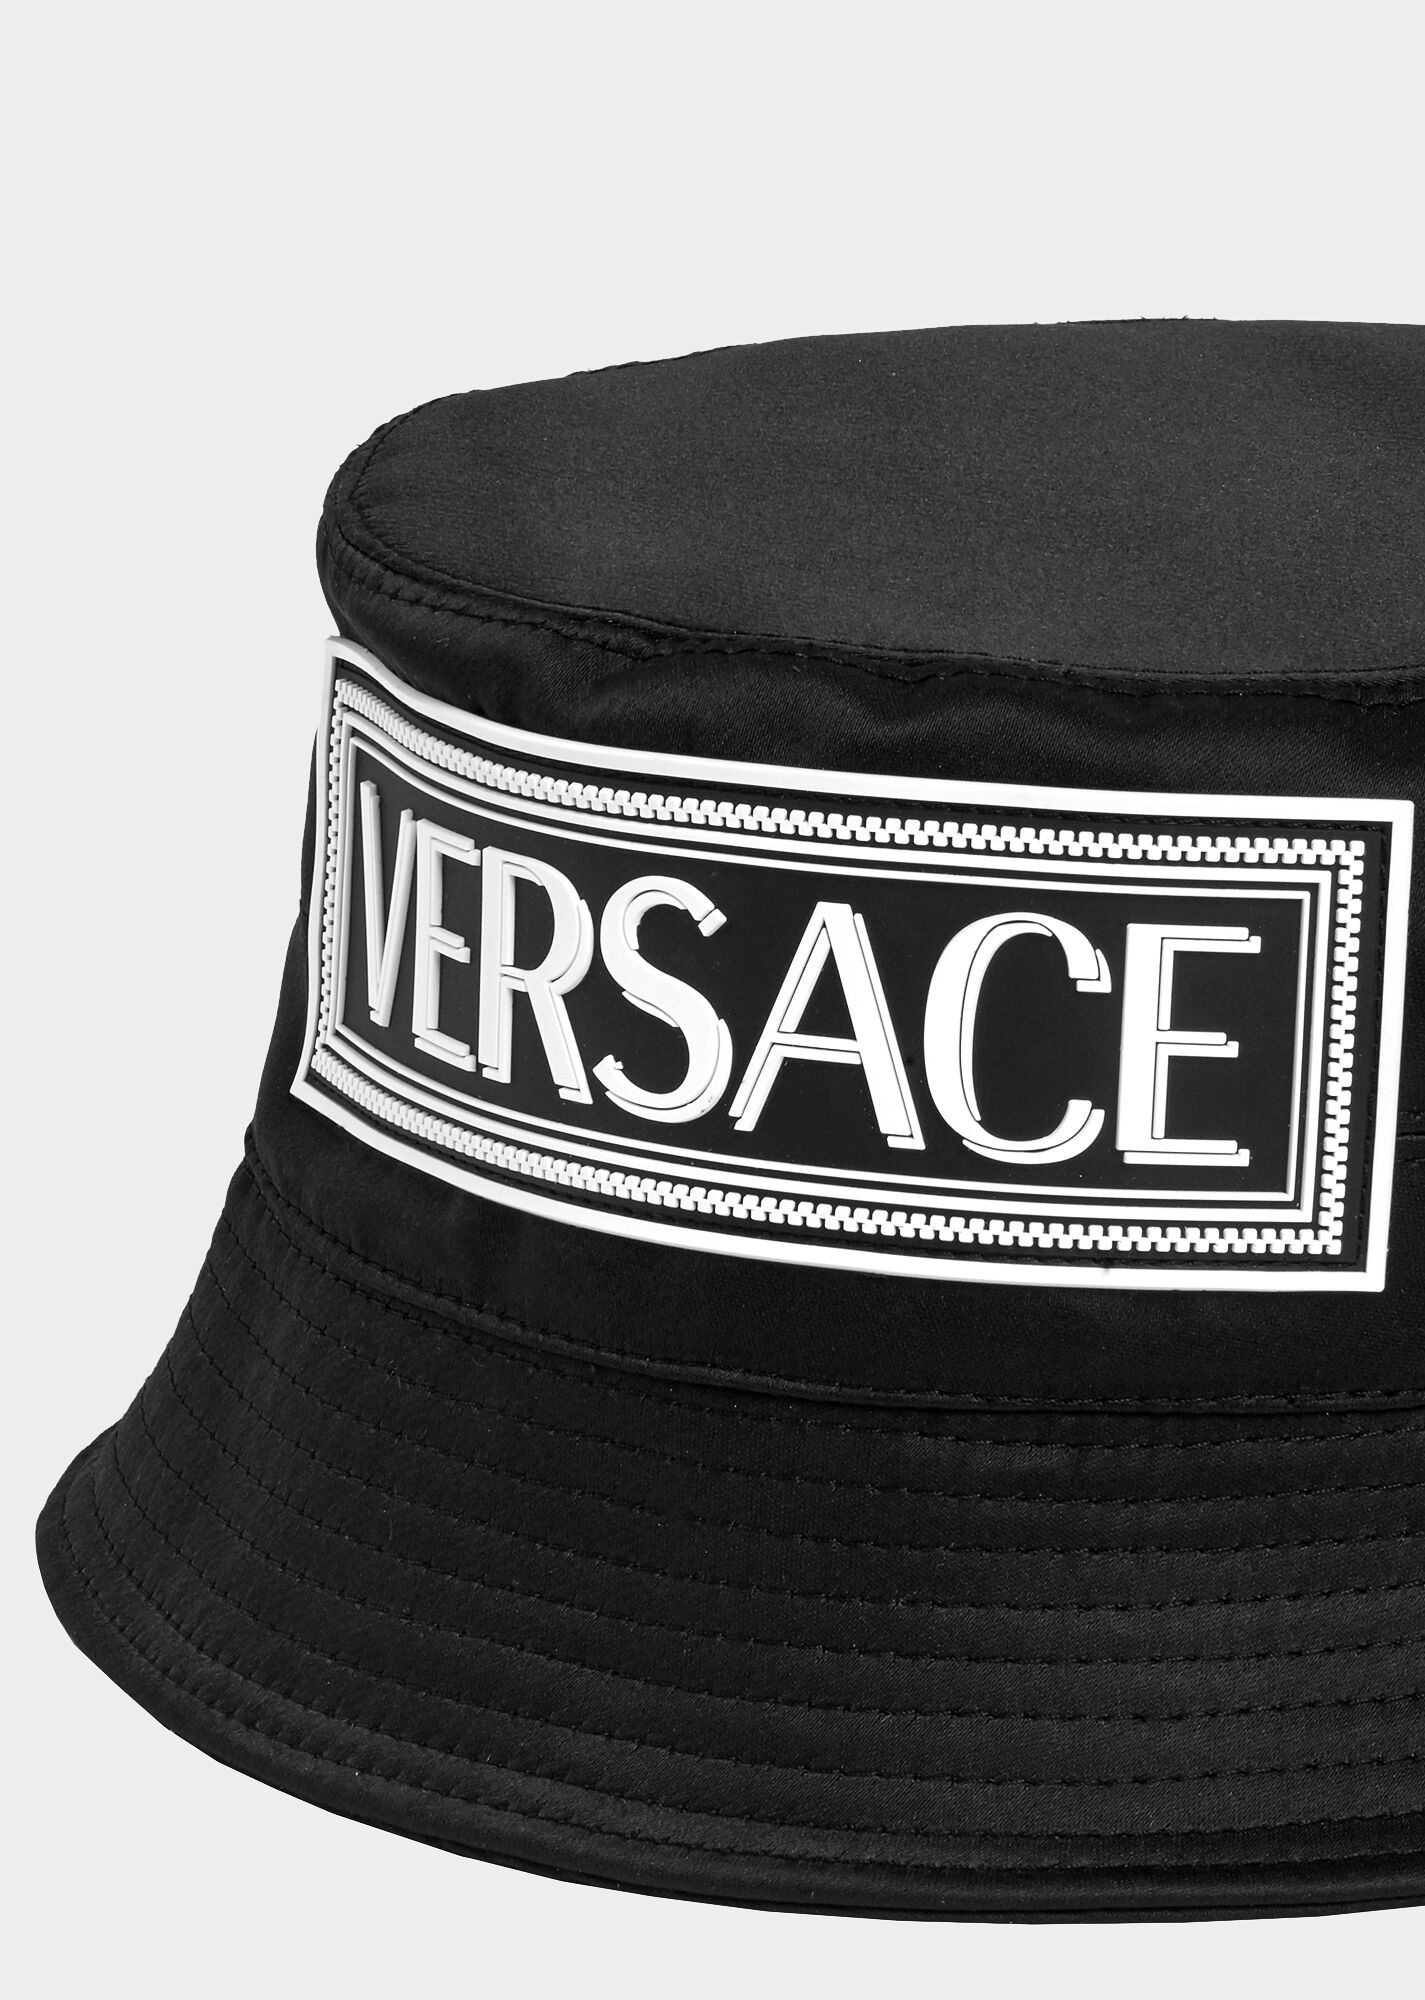 versace-bucket-hat.jpg